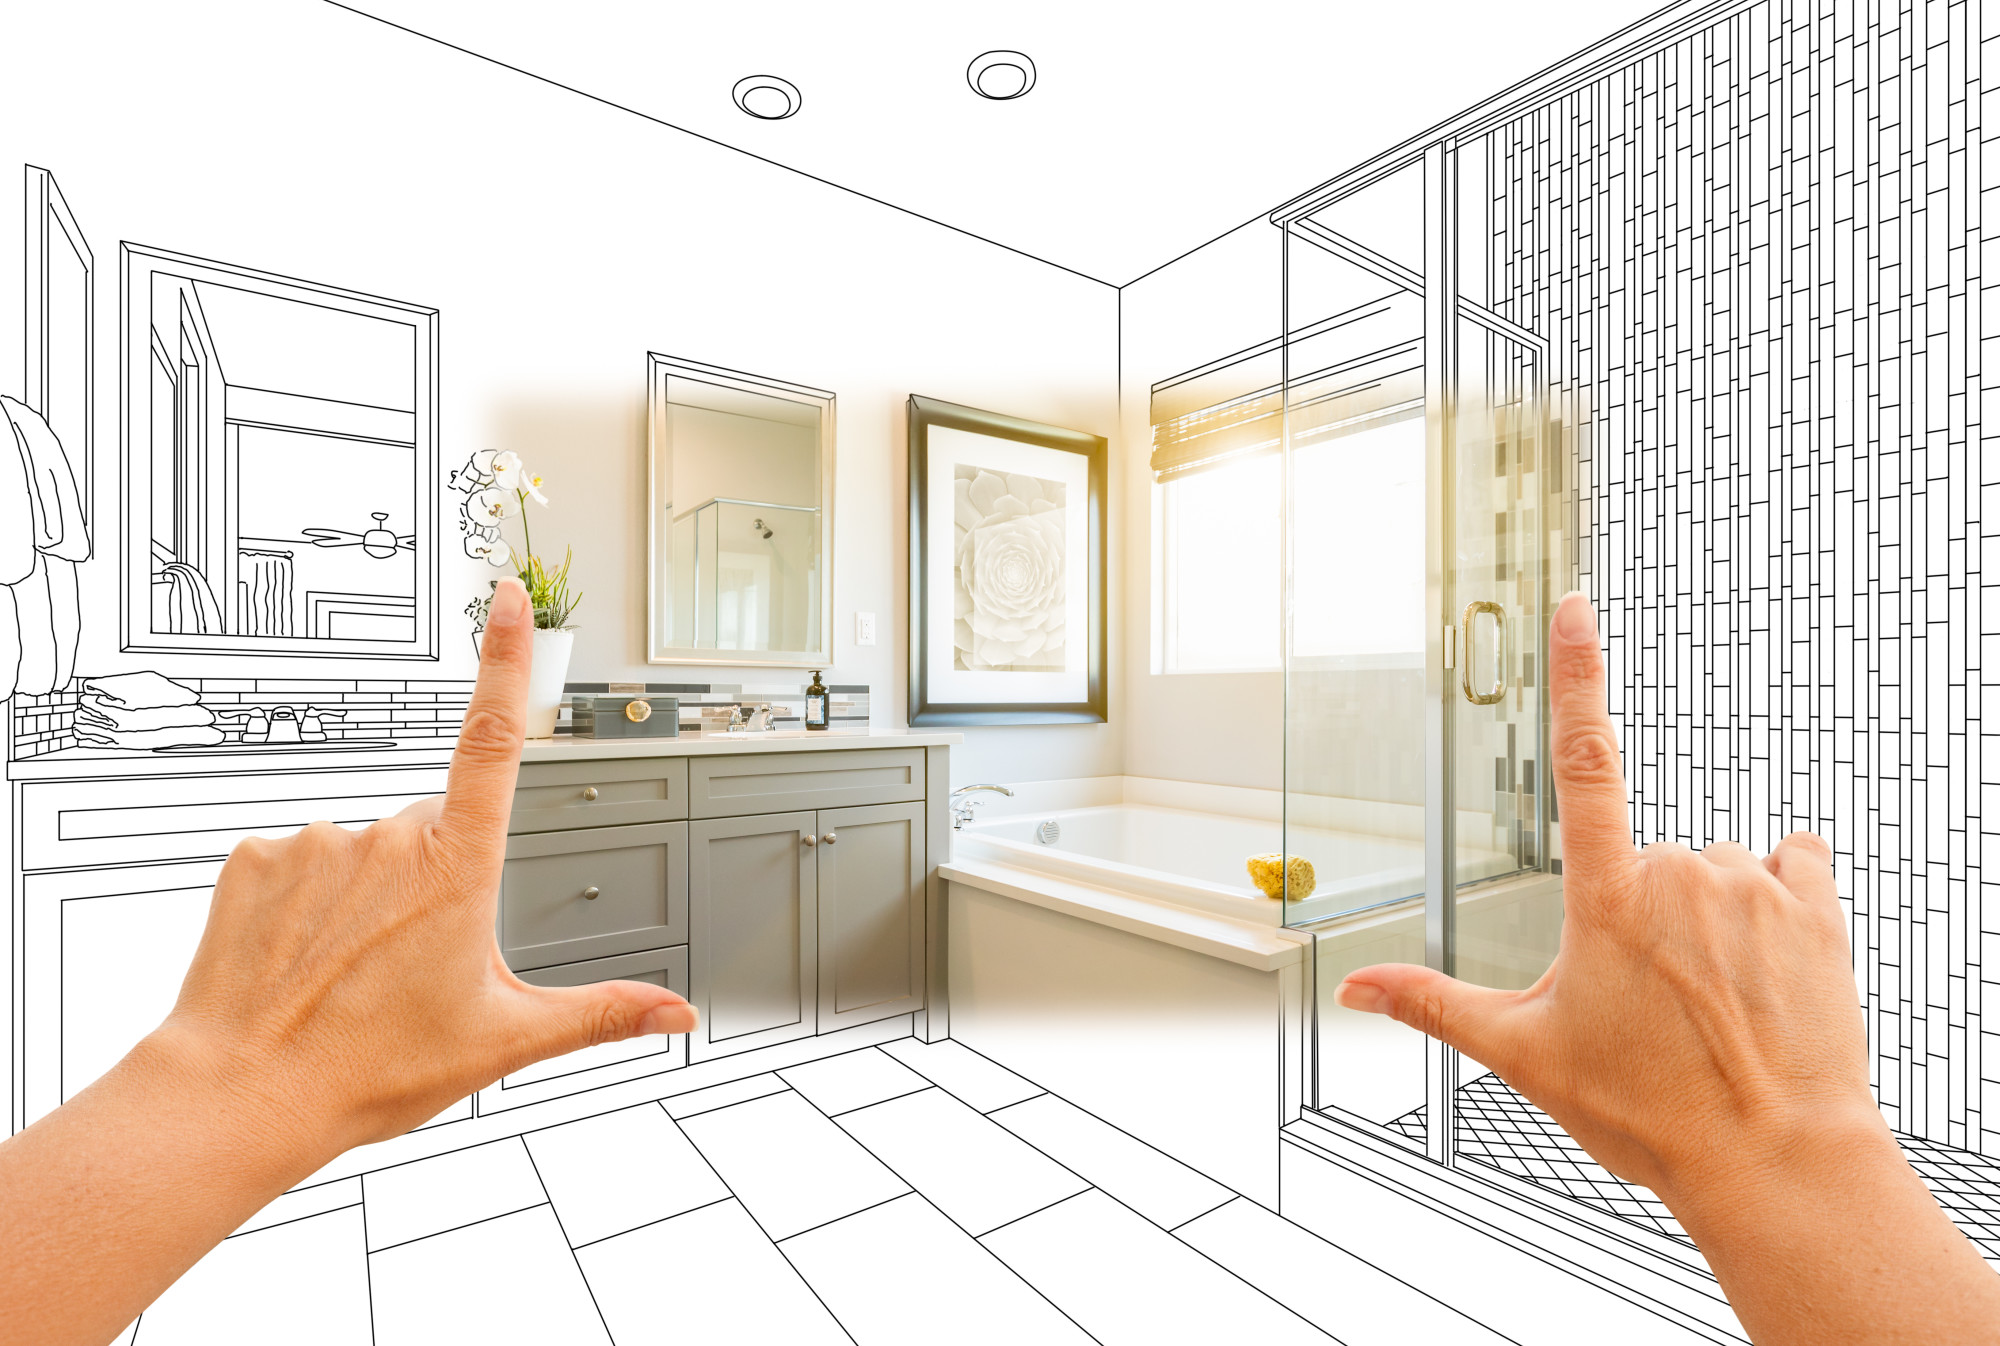 Hands Framing Plan for Bathroom Remodeling